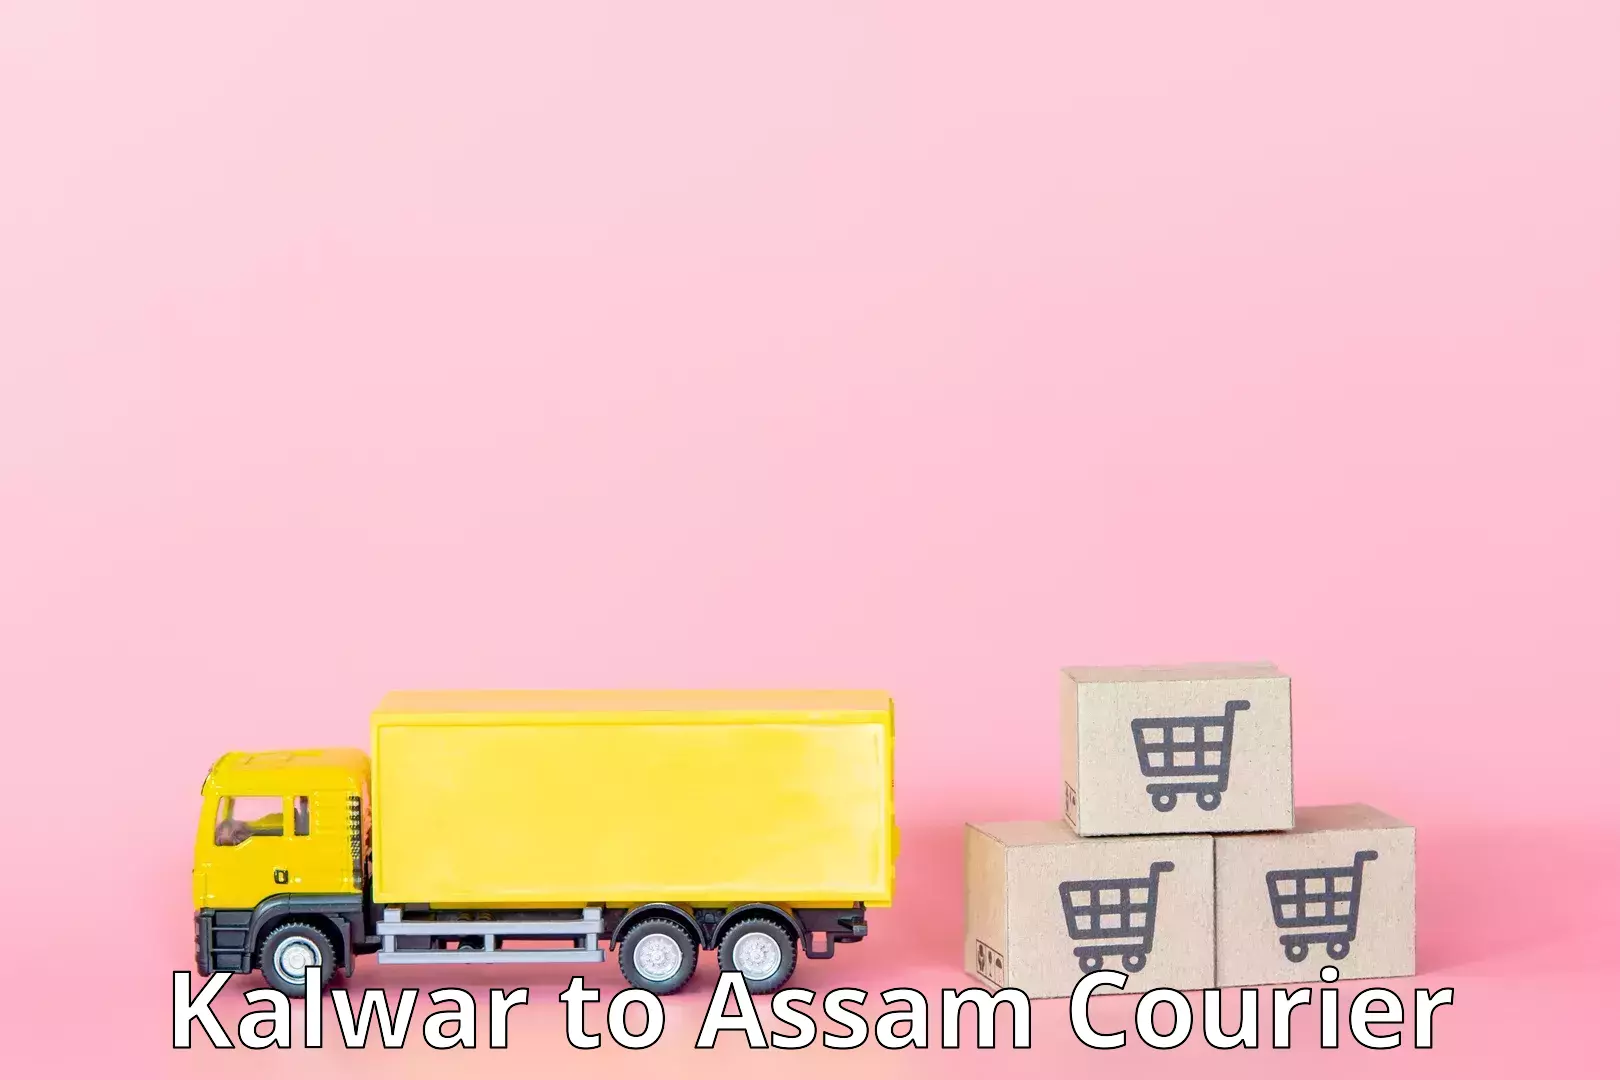 High-speed parcel service Kalwar to Assam